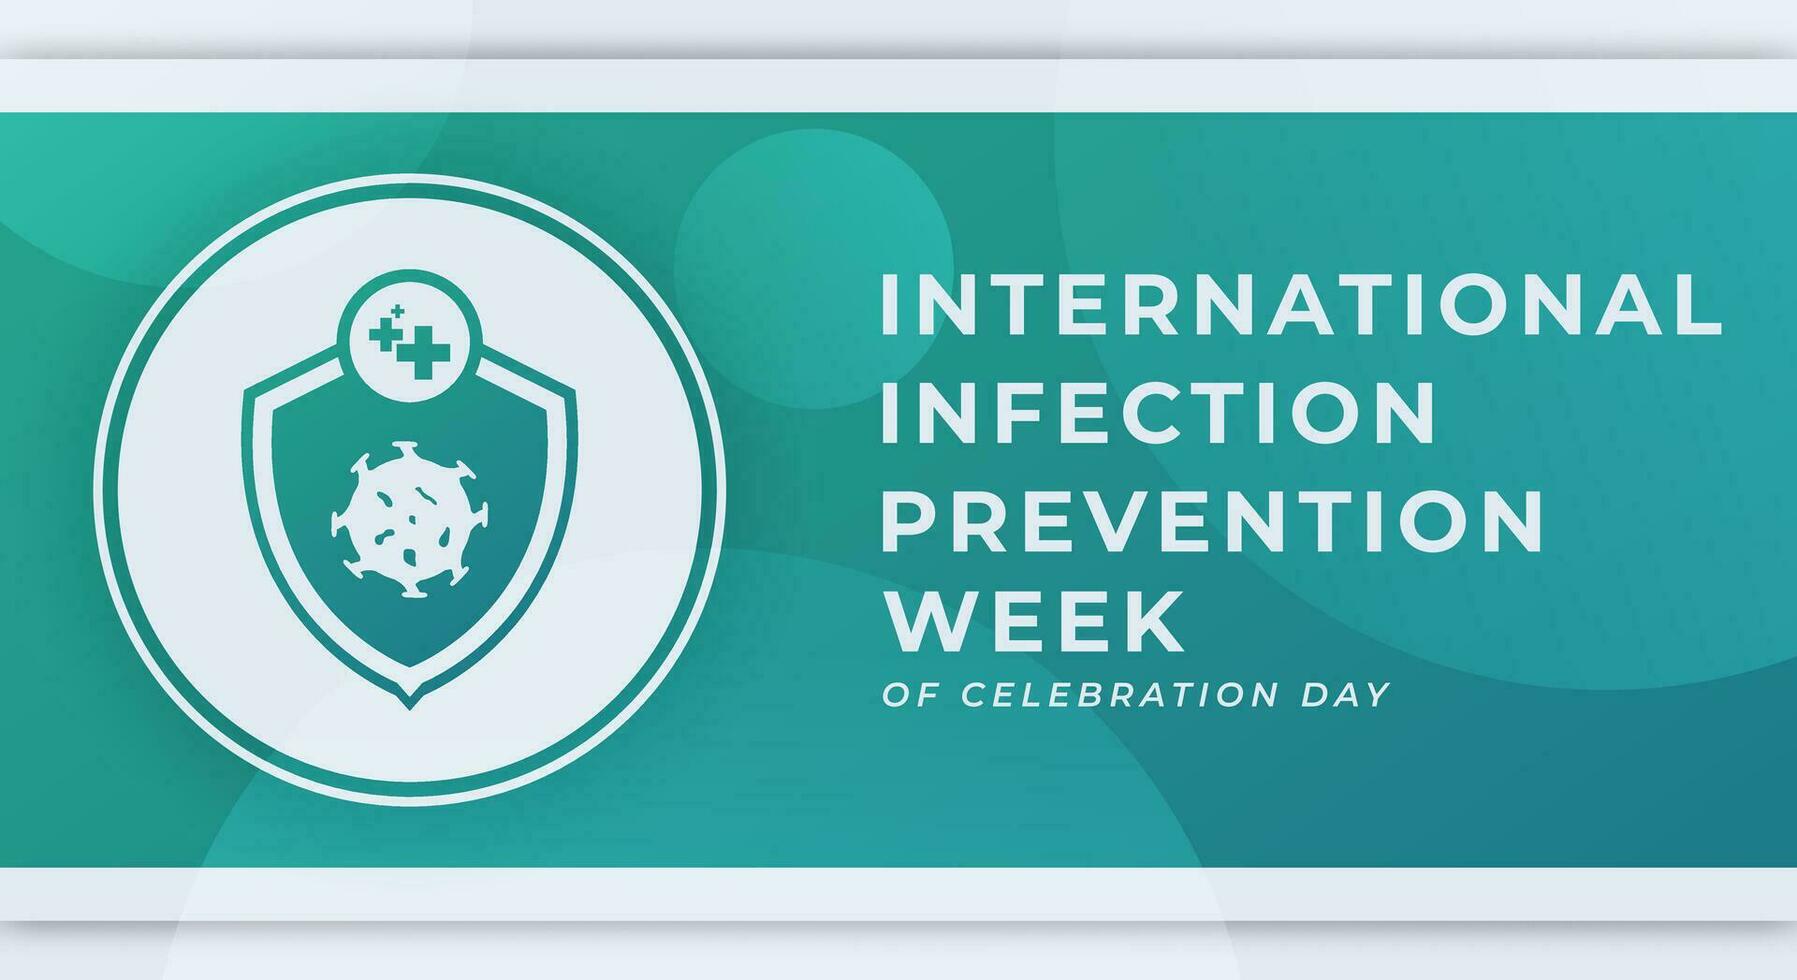 Internationale infectie het voorkomen week viering vector ontwerp illustratie voor achtergrond, poster, banier, reclame, groet kaart